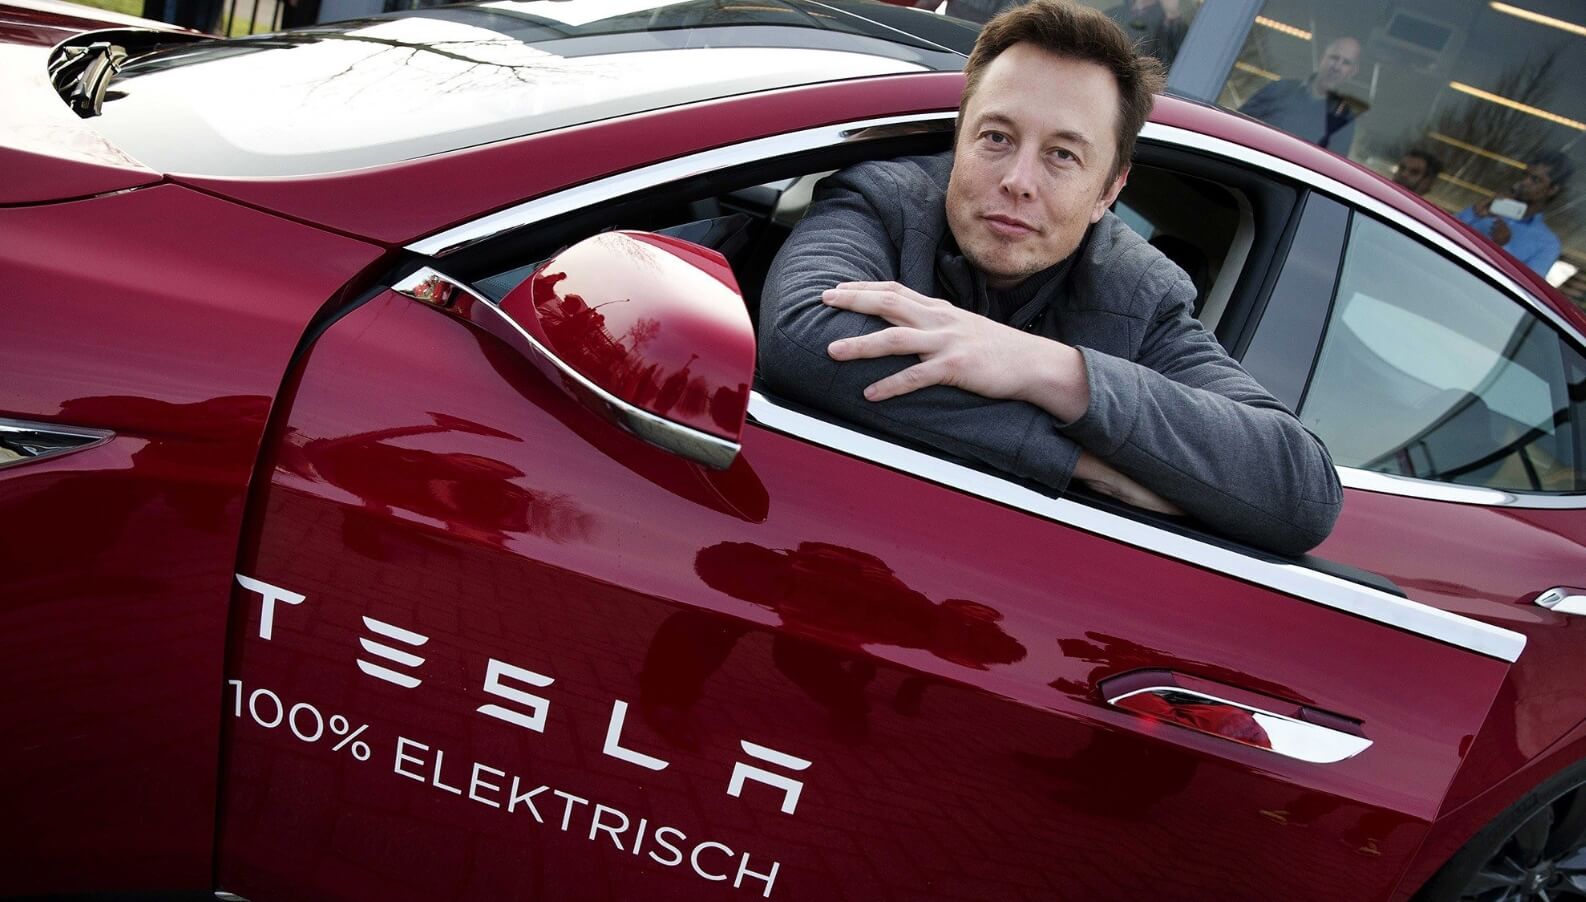 Илон Маск запустит беспилотное такси Tesla летом 2024 года. Он снова изменит мир? Беспилотное такси Tesla может появиться уже в 2024 году. Изображение: habr.com. Фото.